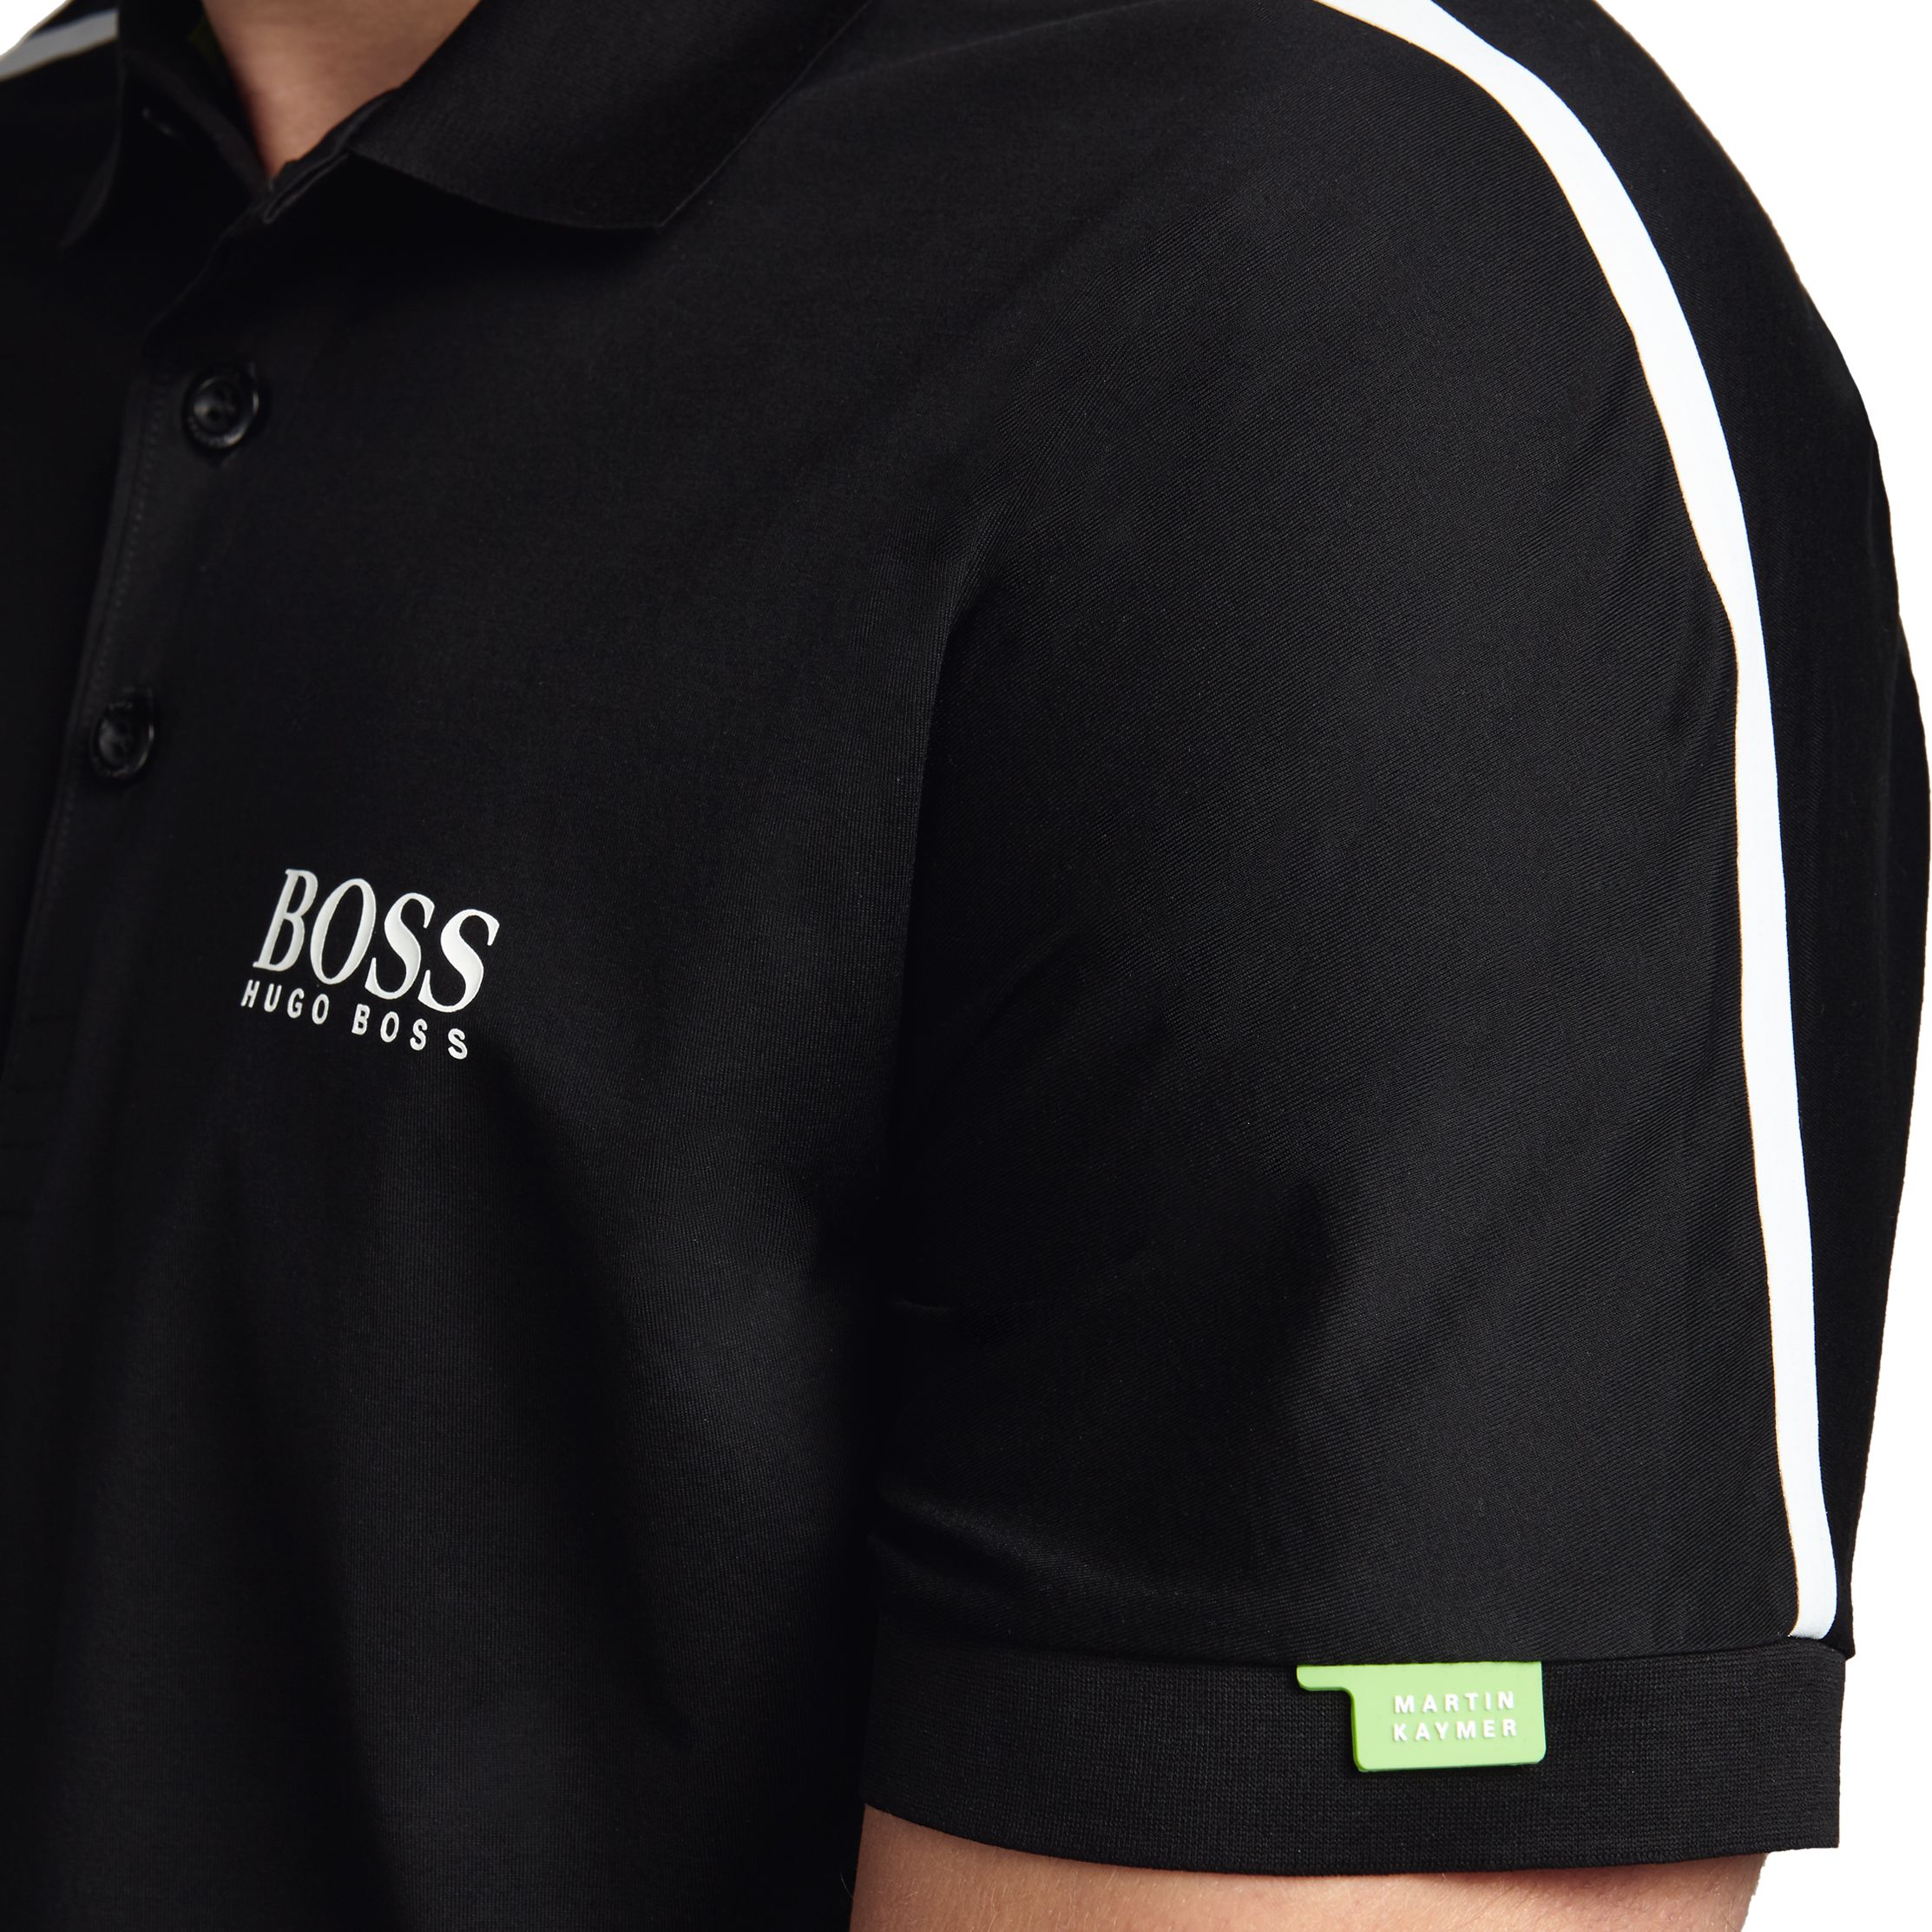 hugo boss golf shirt